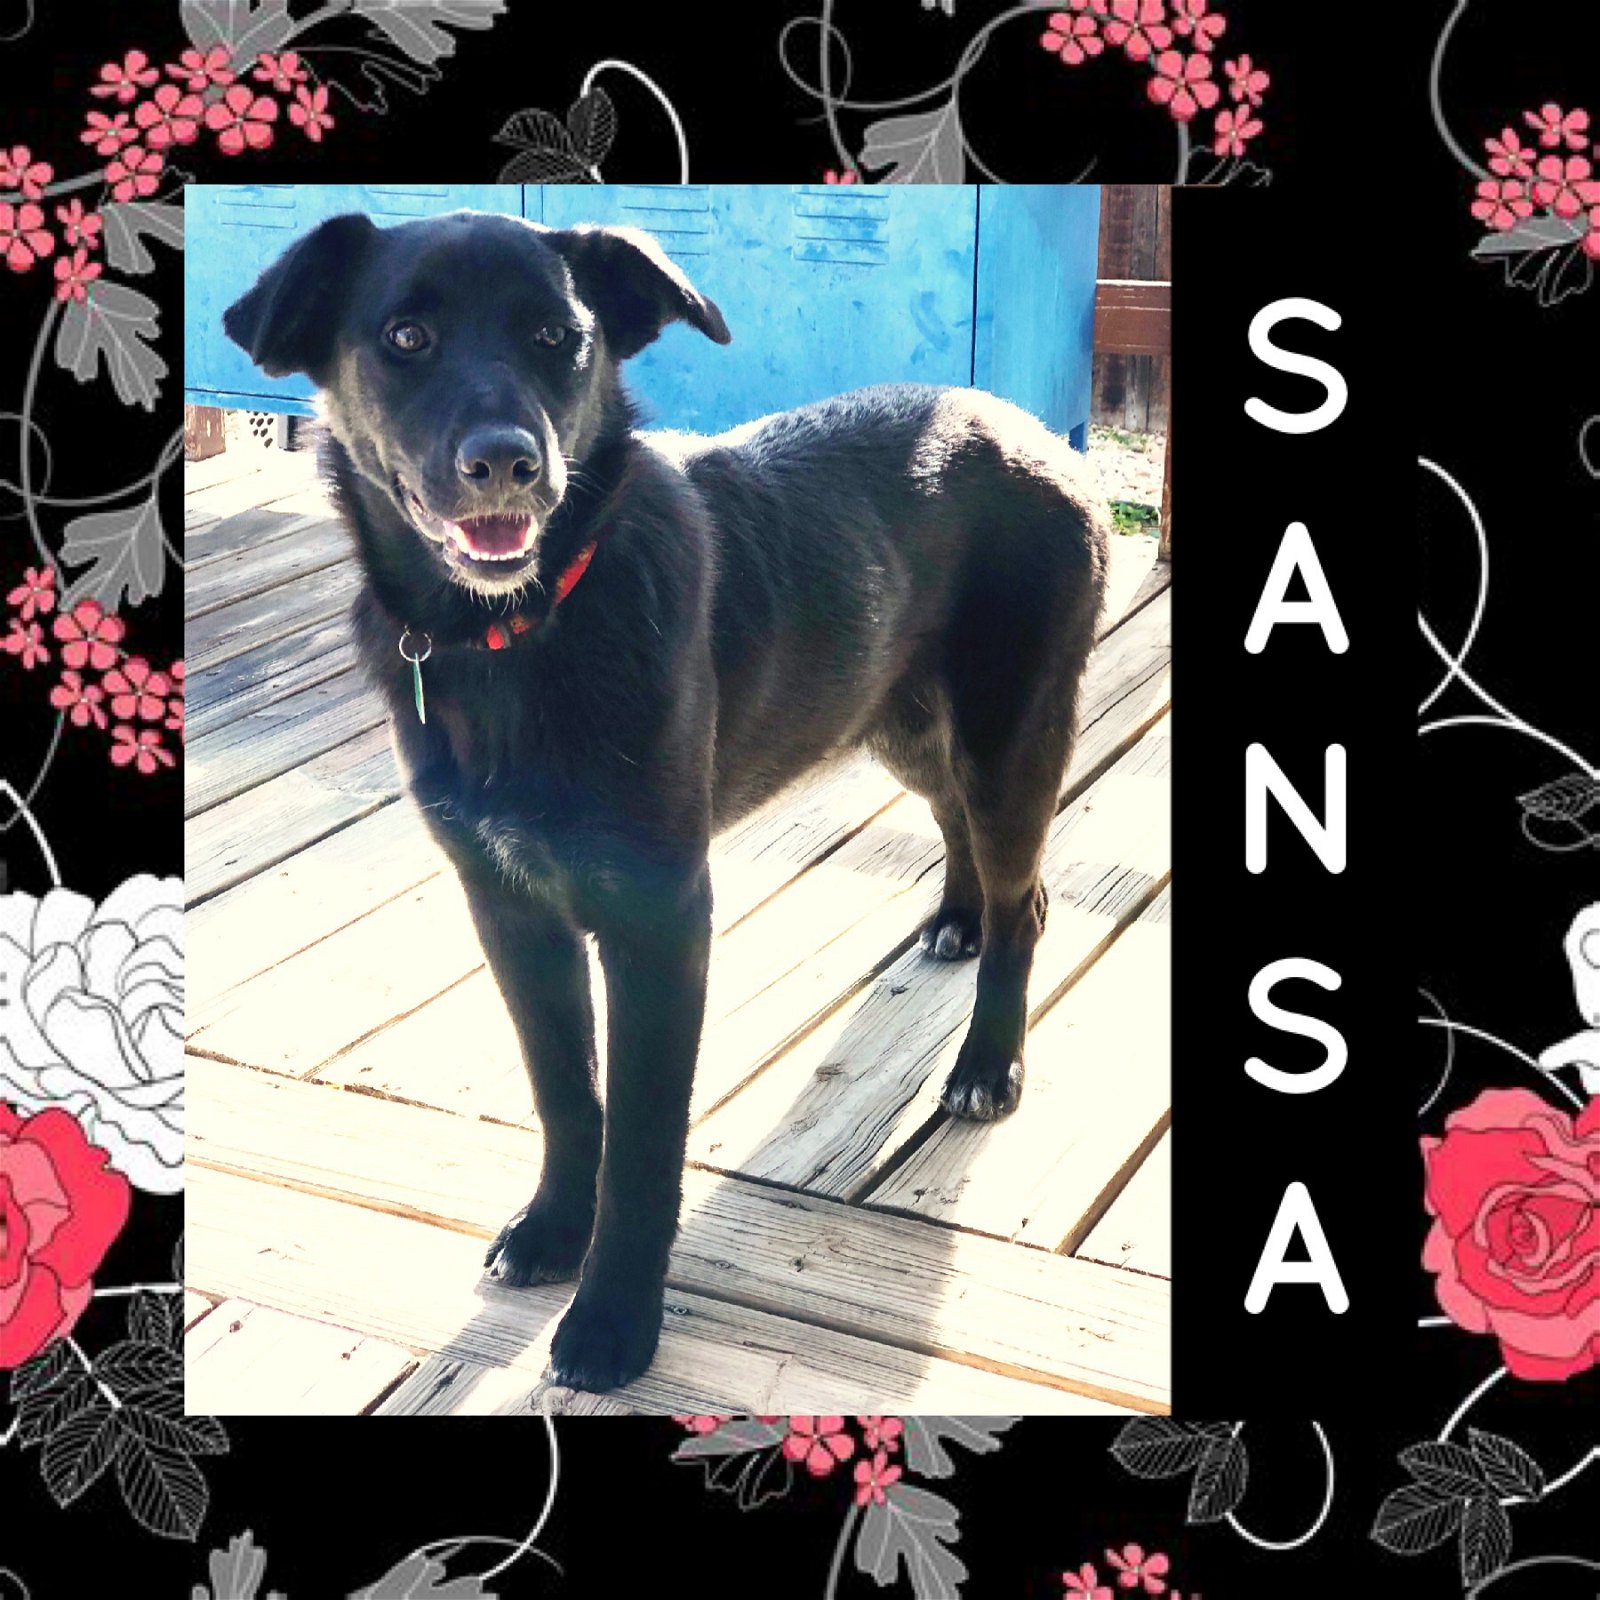 adoptable Dog in Littleton, CO named Sansa Stark